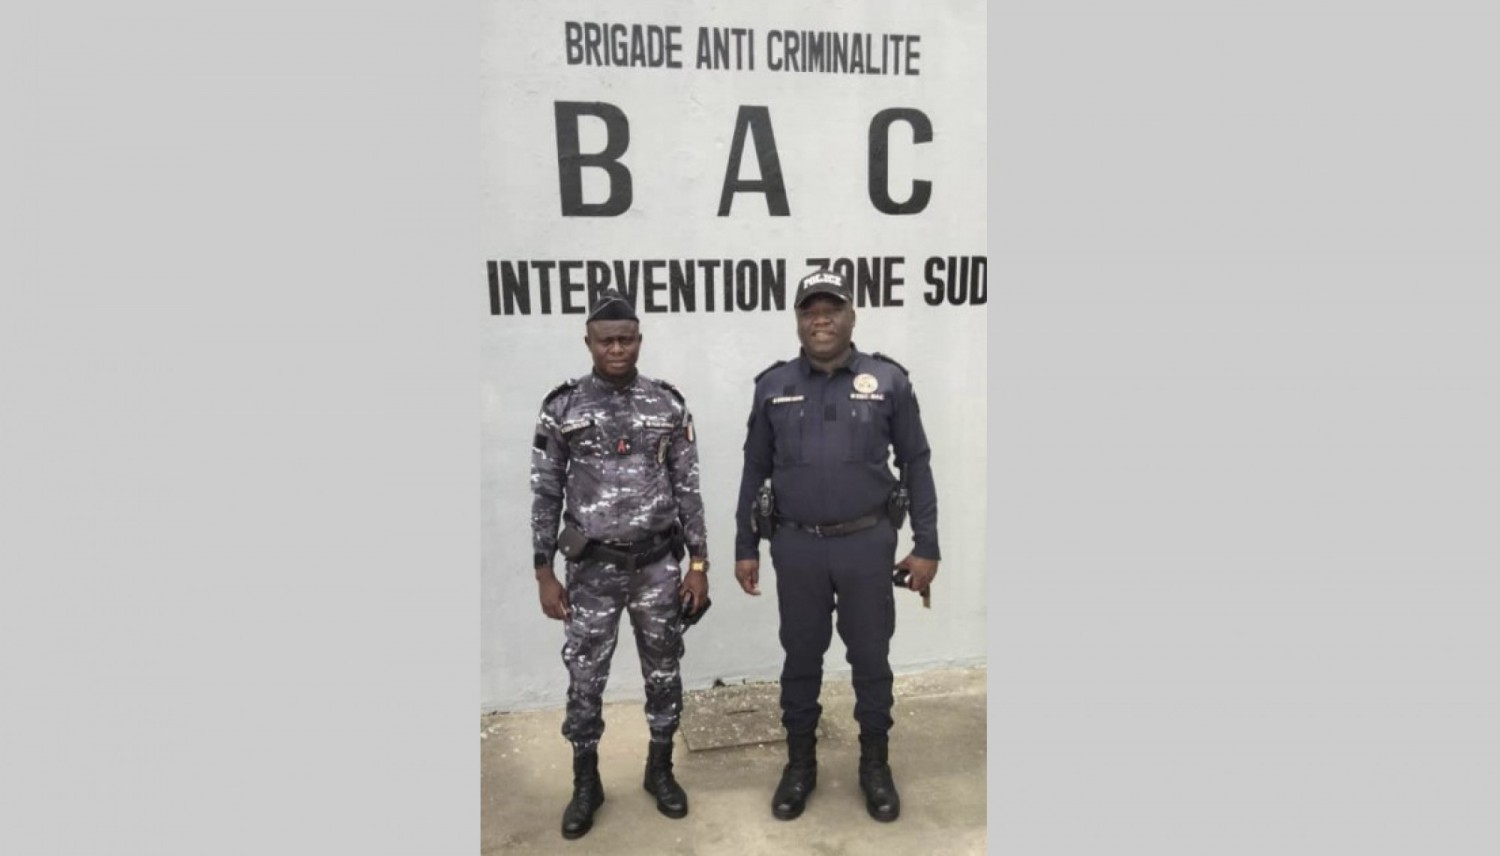 Côte d'Ivoire : Lutte contre la grande criminalité, installation d'une Brigade de la BAC dans la zone sud d'Abidjan